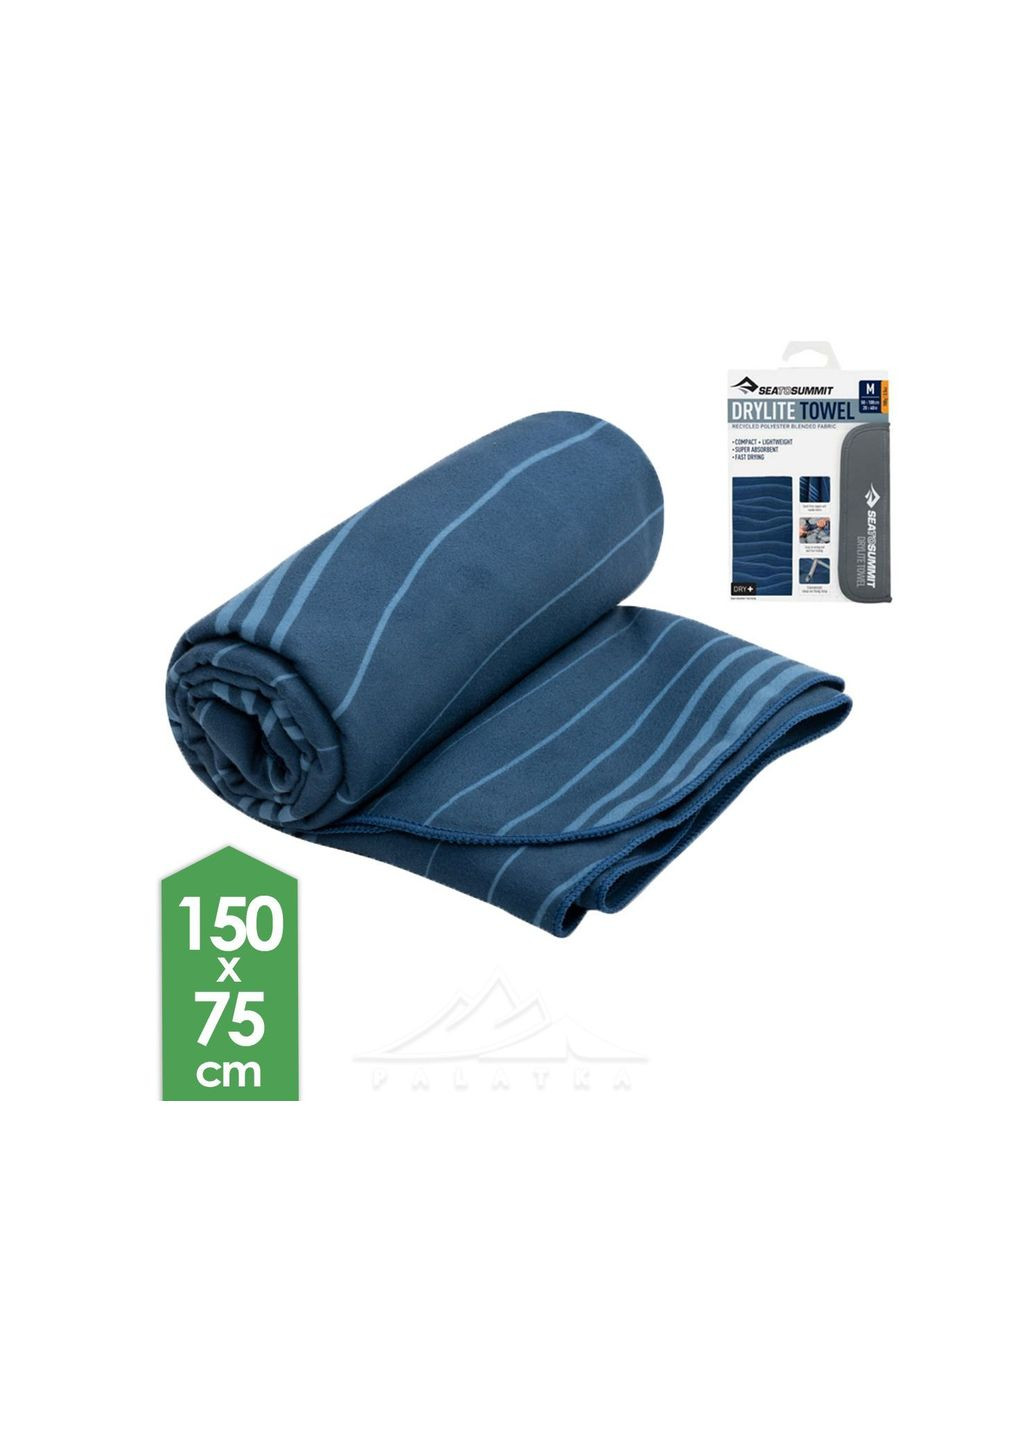 Sea To Summit полотенце drylite towel xl синий голубой комбинированный производство -